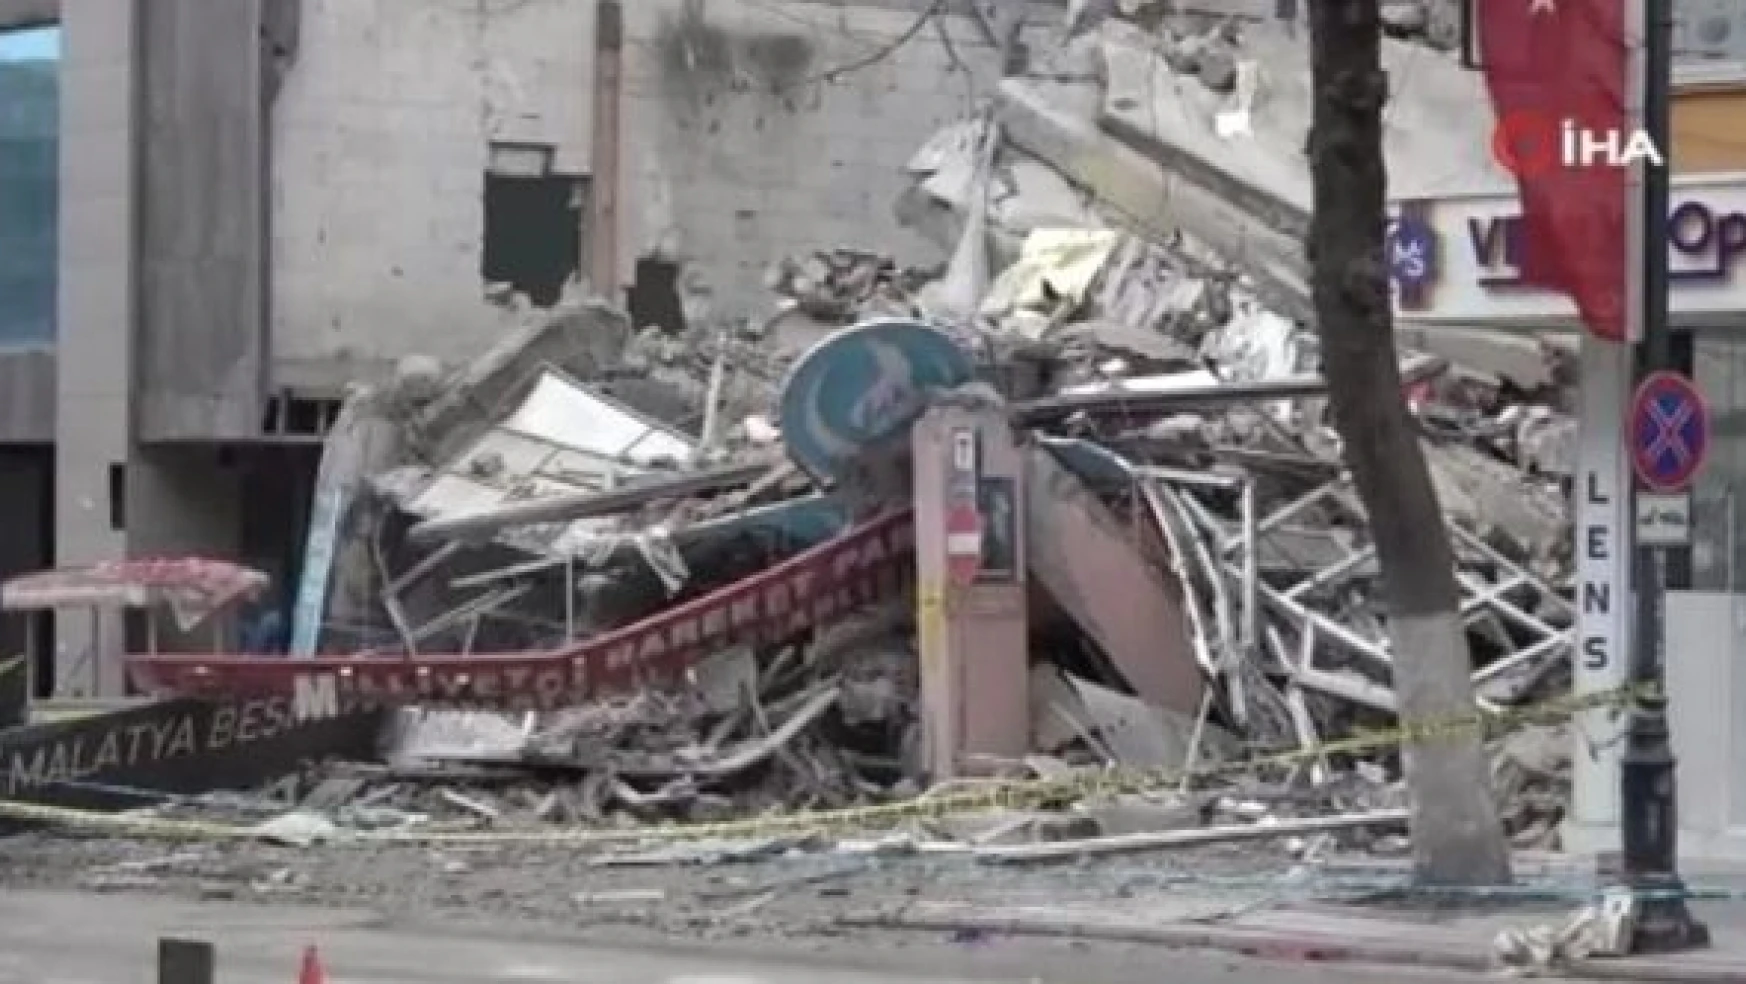 Malatya MHP il binası çöktü